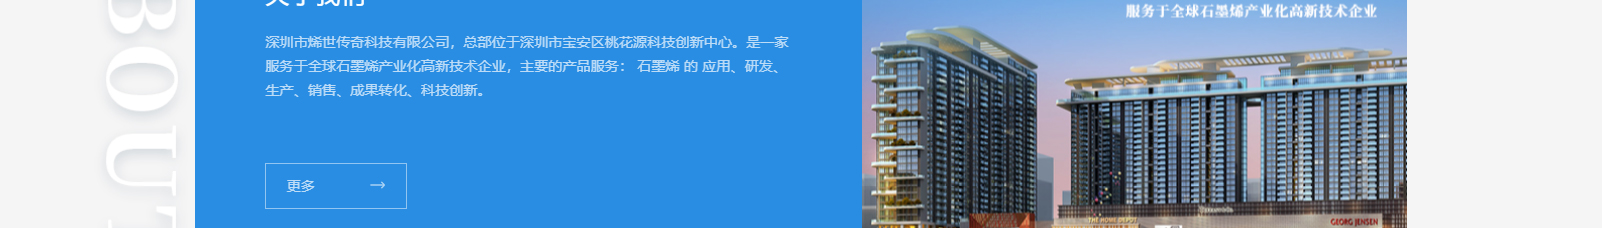 深圳市烯世传奇科技有限公司_网站建设设计案例